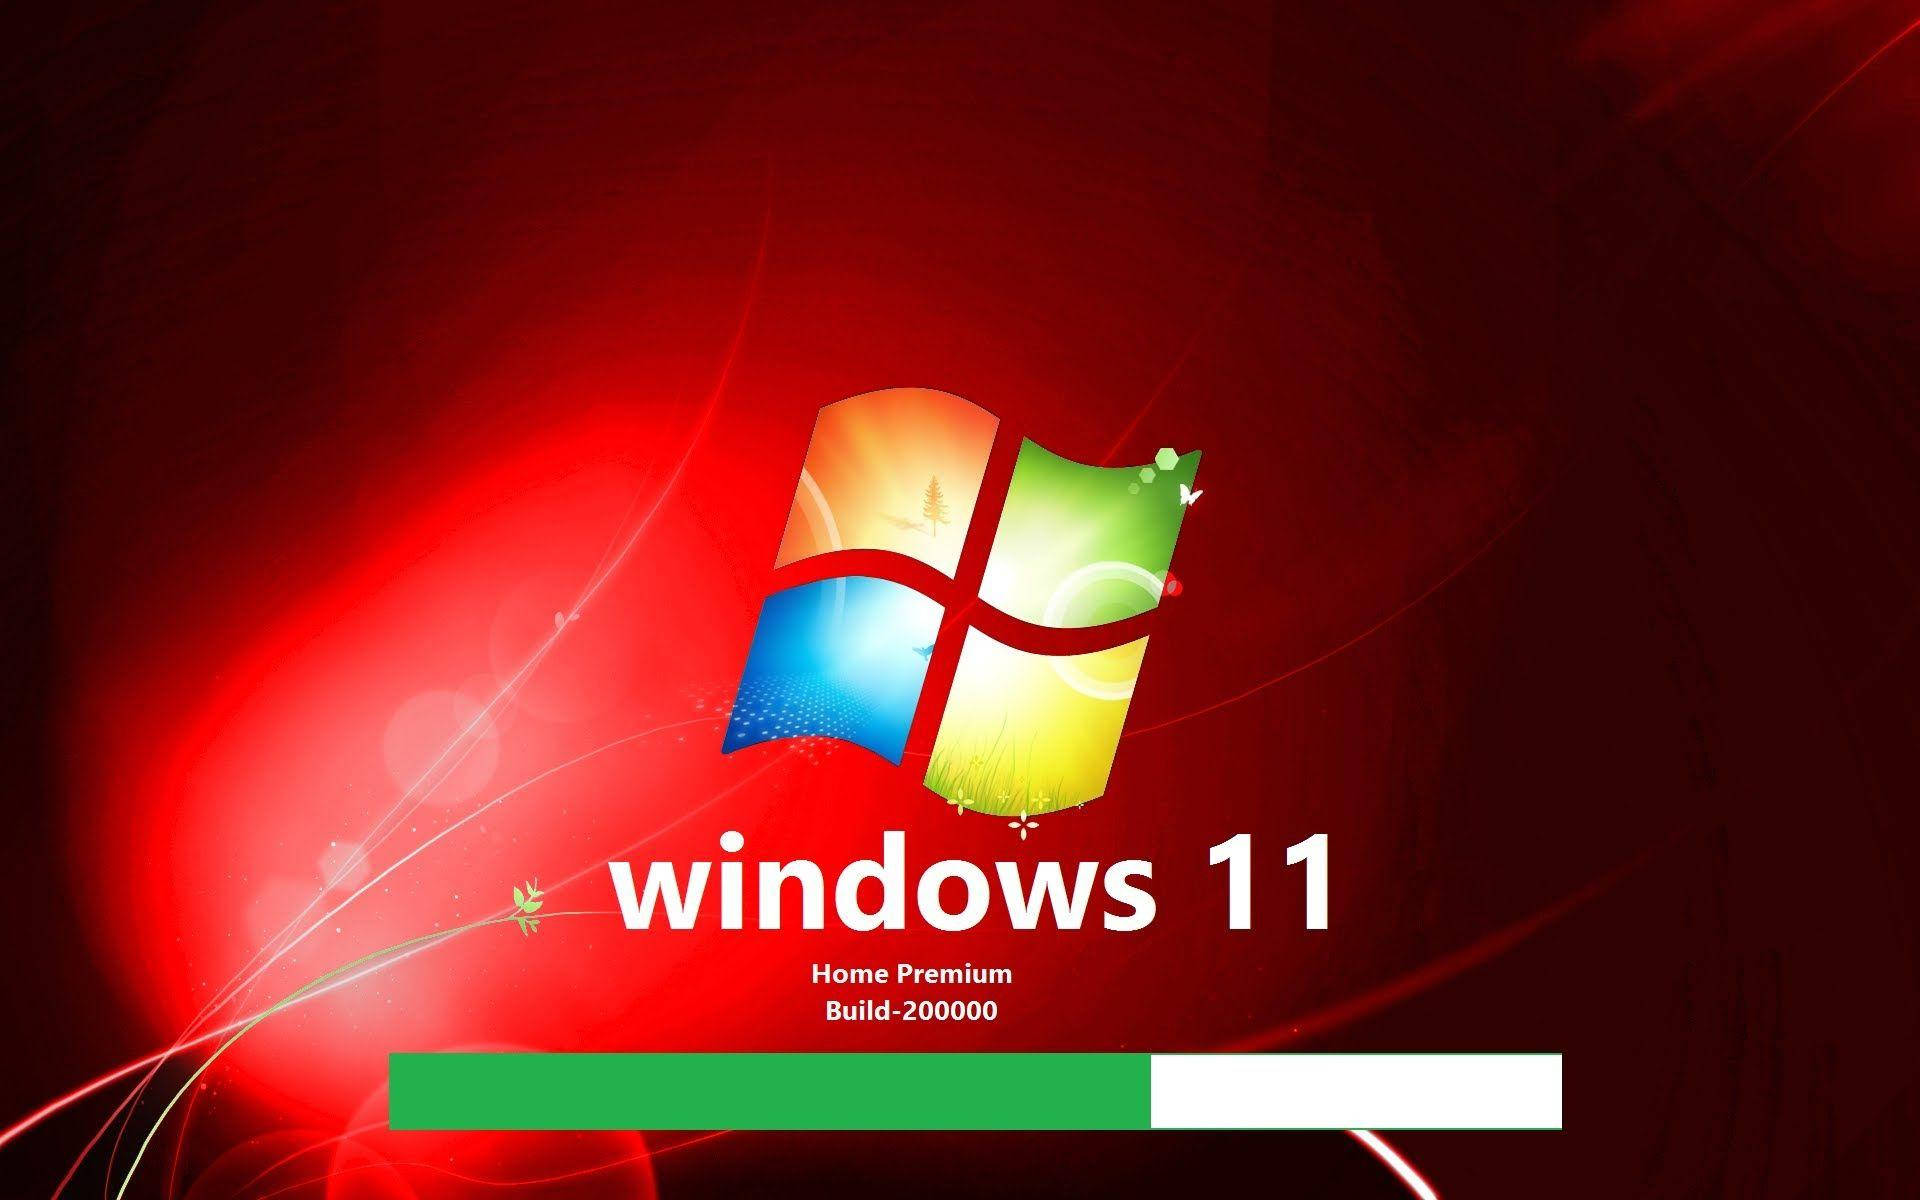 Windows 11 Home Premium